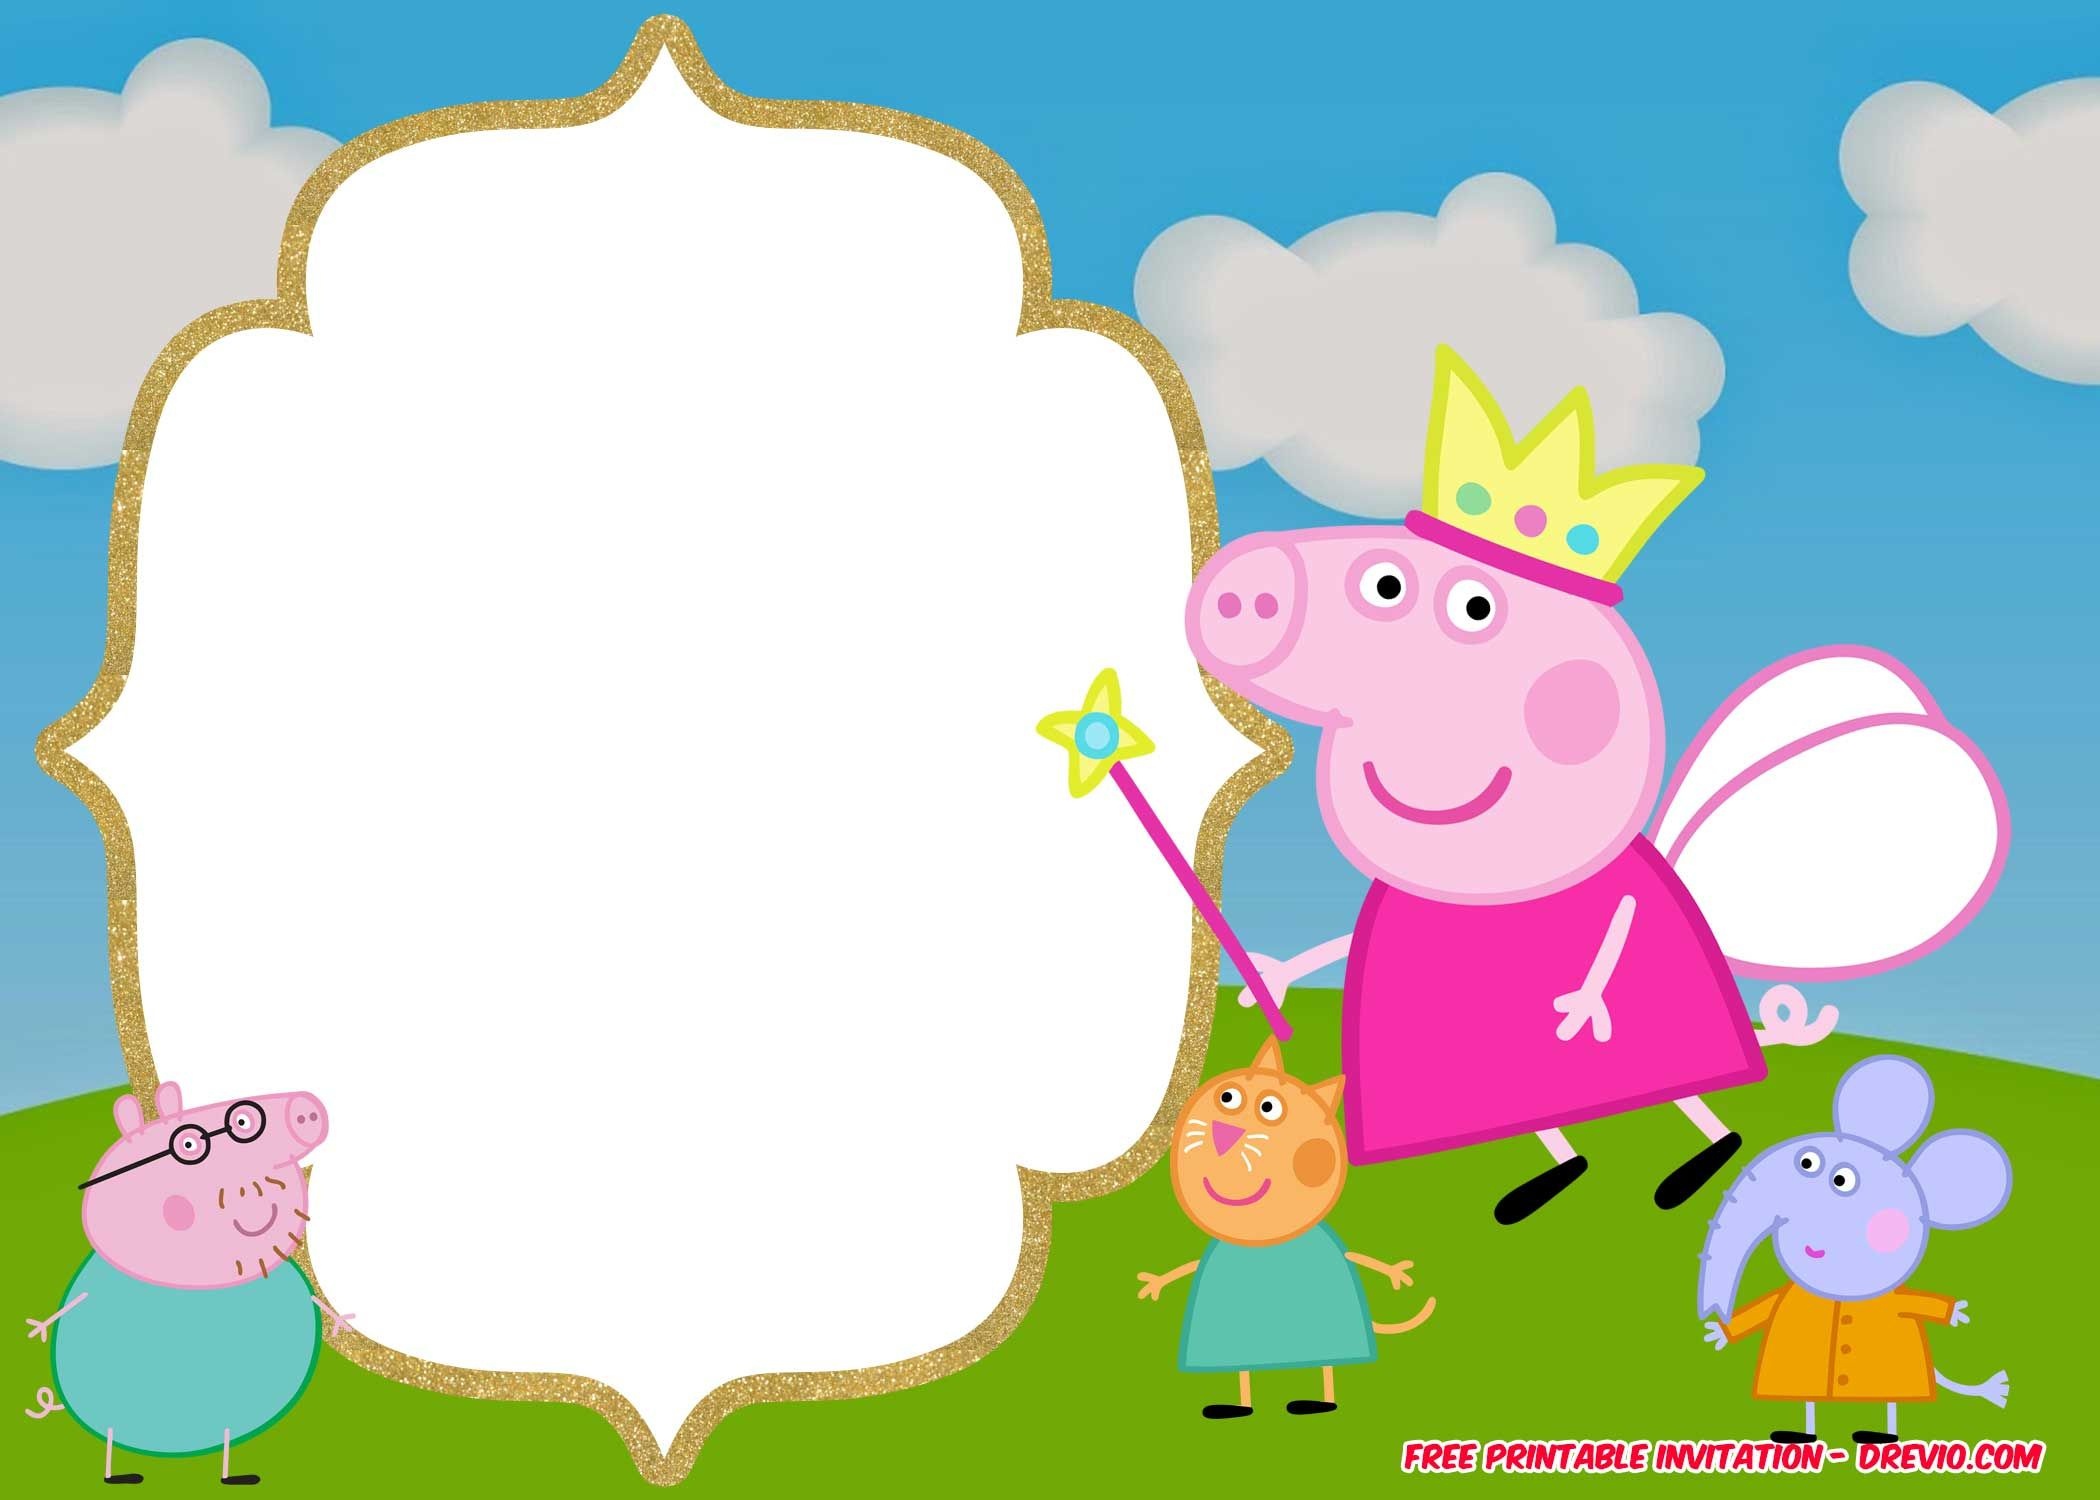 Free Printable Peppa Pig Invitation | Vanida Elizabeth Diego - Peppa Pig Character Free Printable Images